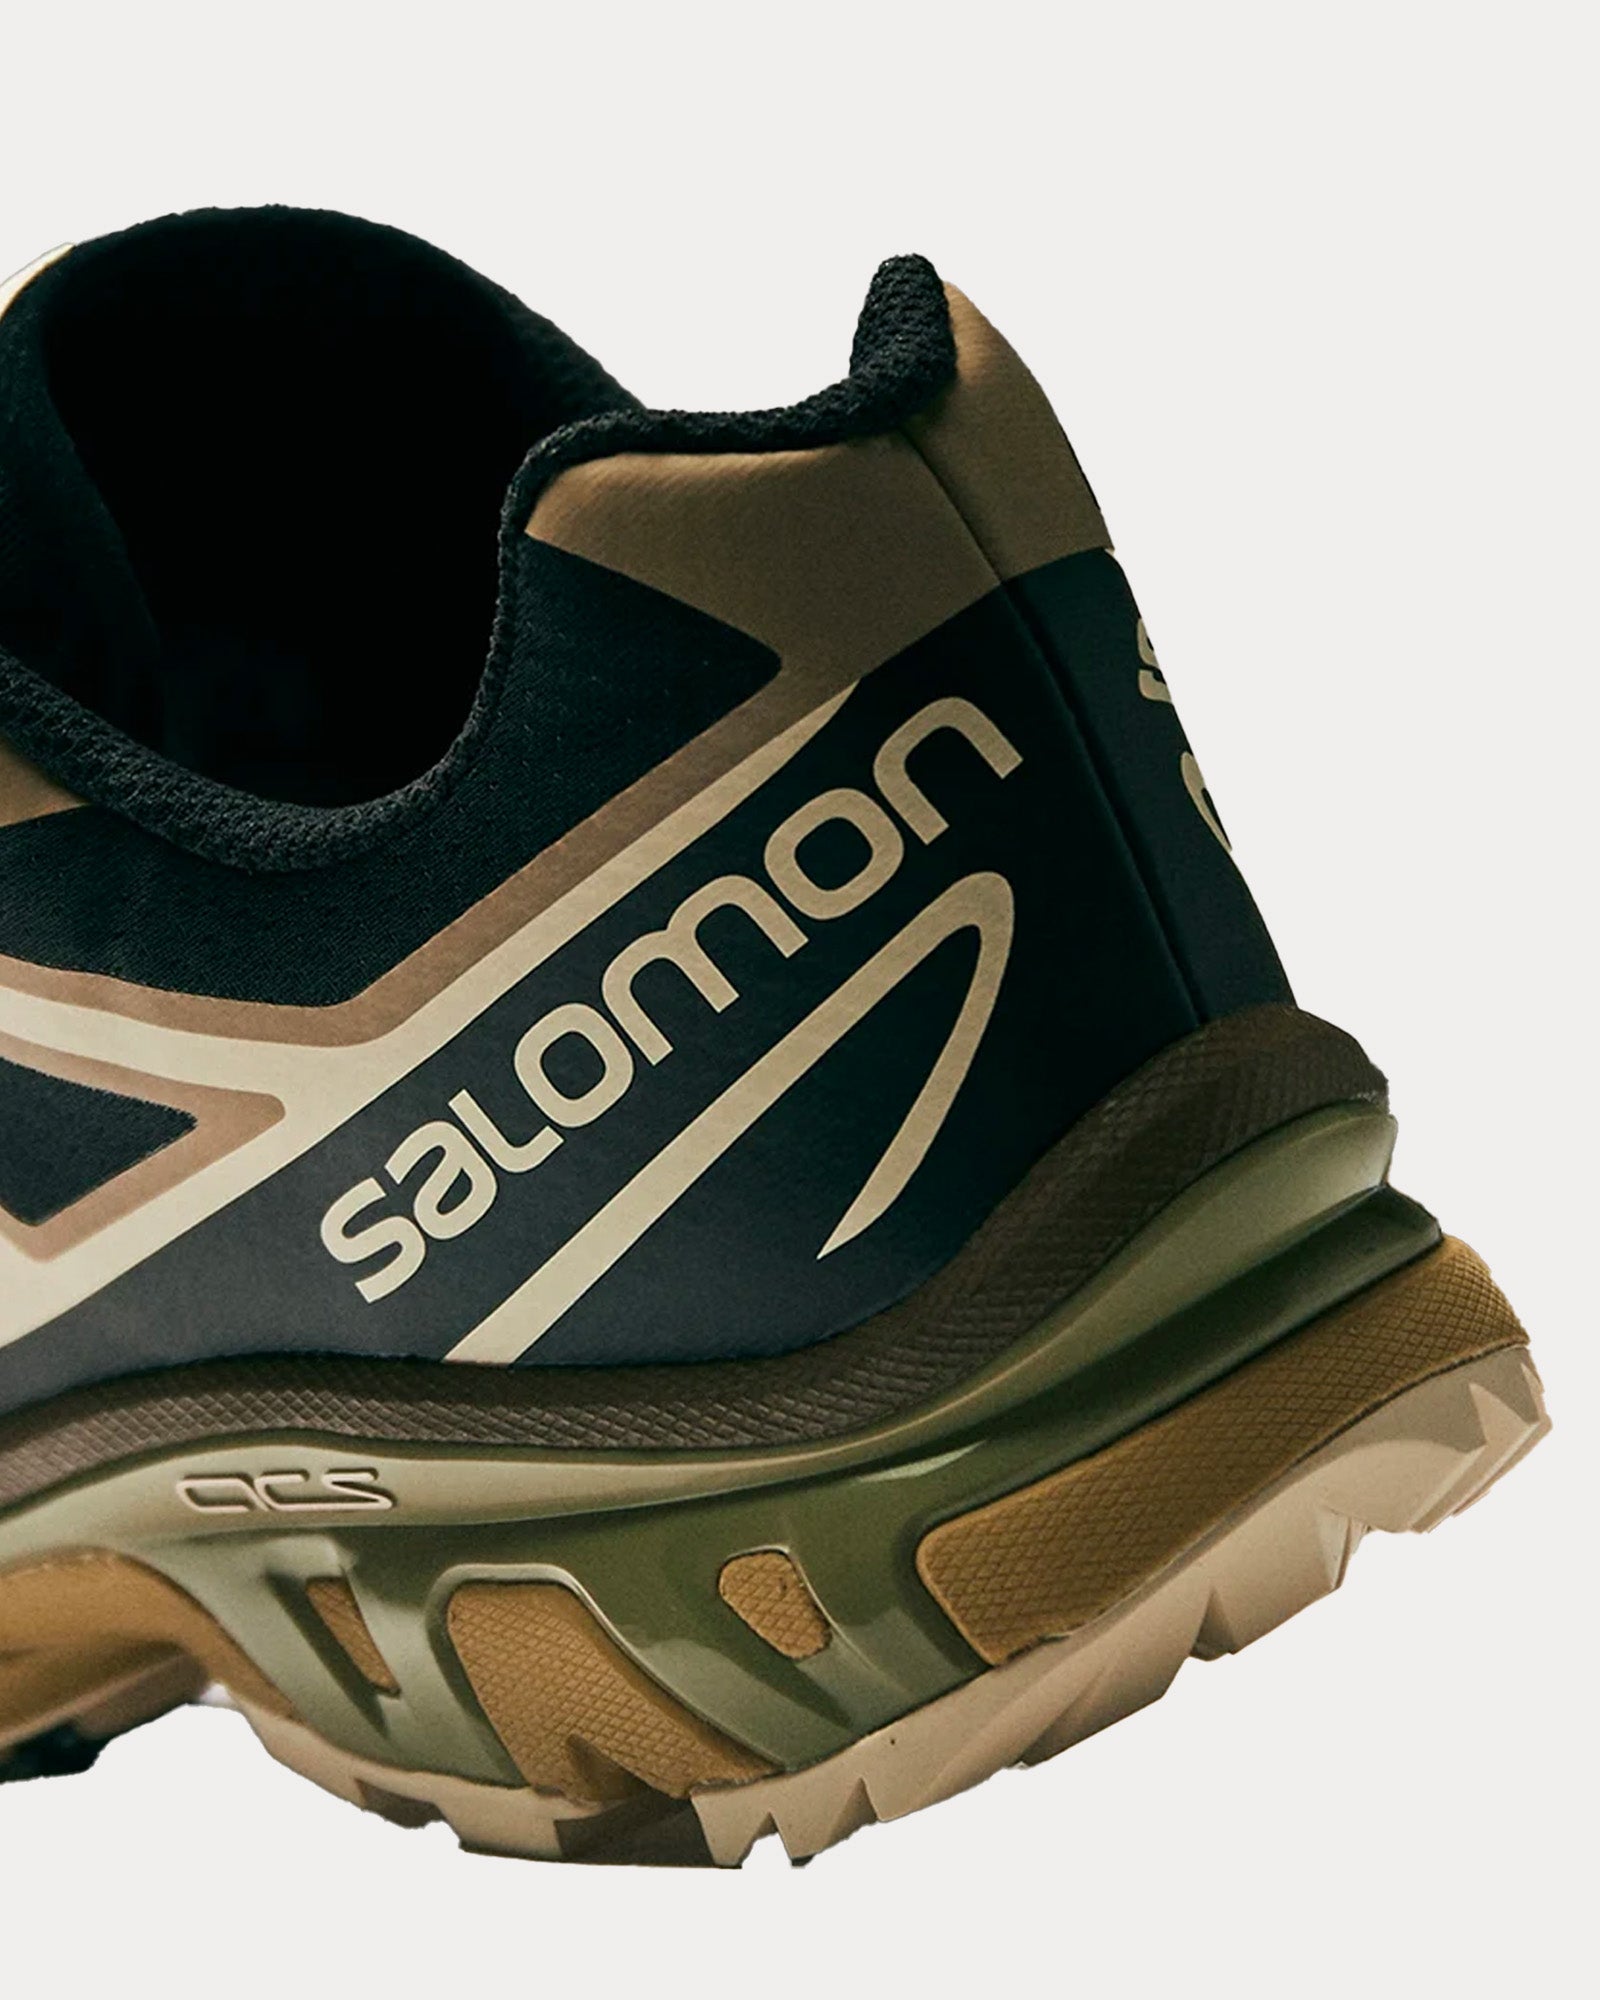 Salomon x End. - XT-6 'Dark Truffle' Black / Kelp / Moss Low Top Sneakers